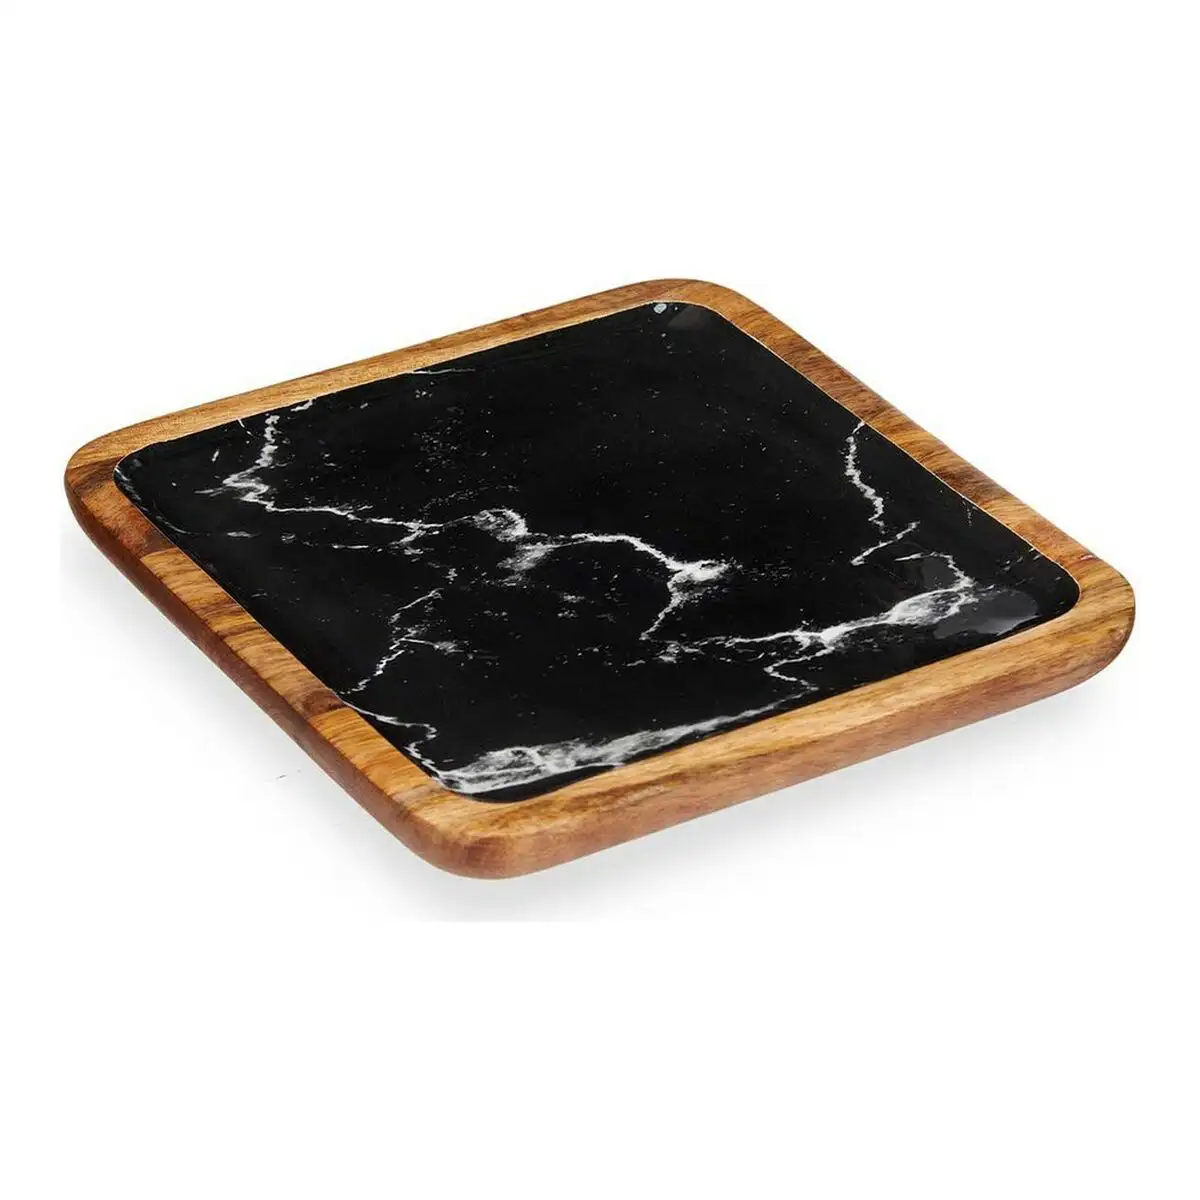 Centre de table marbre noir 25 x 25 cm marron resine bois de manguier_7872. Entrez dans l'Univers de DIAYTAR SENEGAL - Où l'Innovation Rencontre la Tradition. Explorez notre sélection de produits modernes et traditionnels qui incarnent l'esprit dynamique du Sénégal.